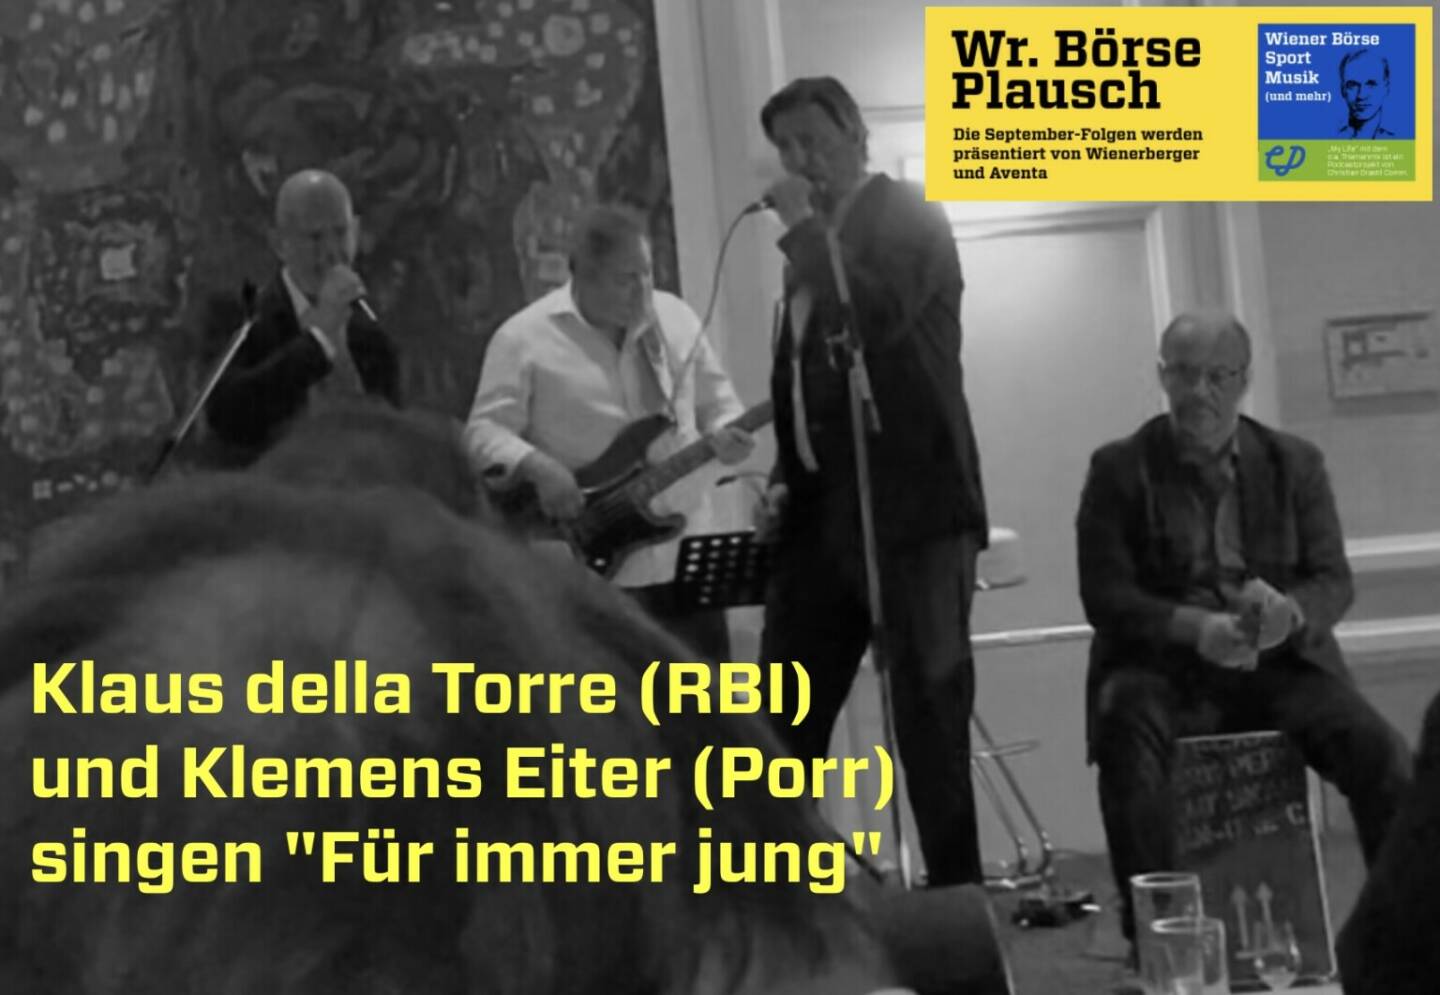 Klaus della Torre (RBI) und Klemens Eiter (Porr) singen Für immer jung, mehr in Folge S3/24 der Wiener Börse Pläusche im Rahmen von http://www.christian-drastil.com/podcast . 